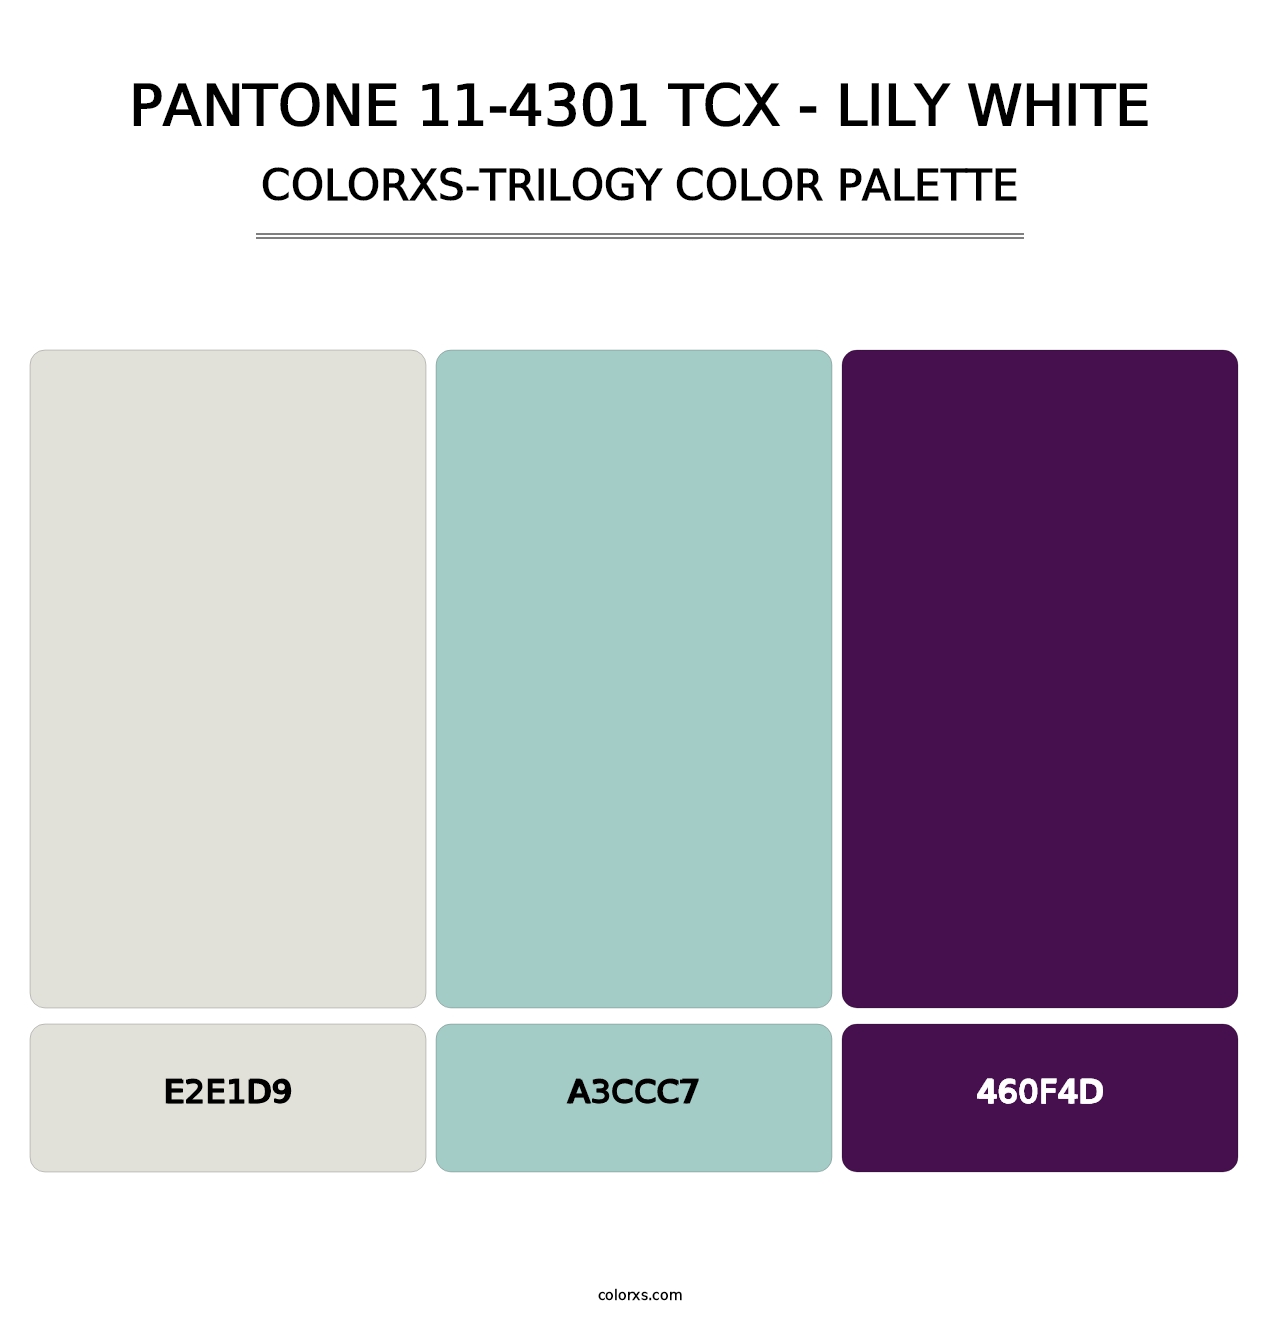 PANTONE 11-4301 TCX - Lily White - Colorxs Trilogy Palette